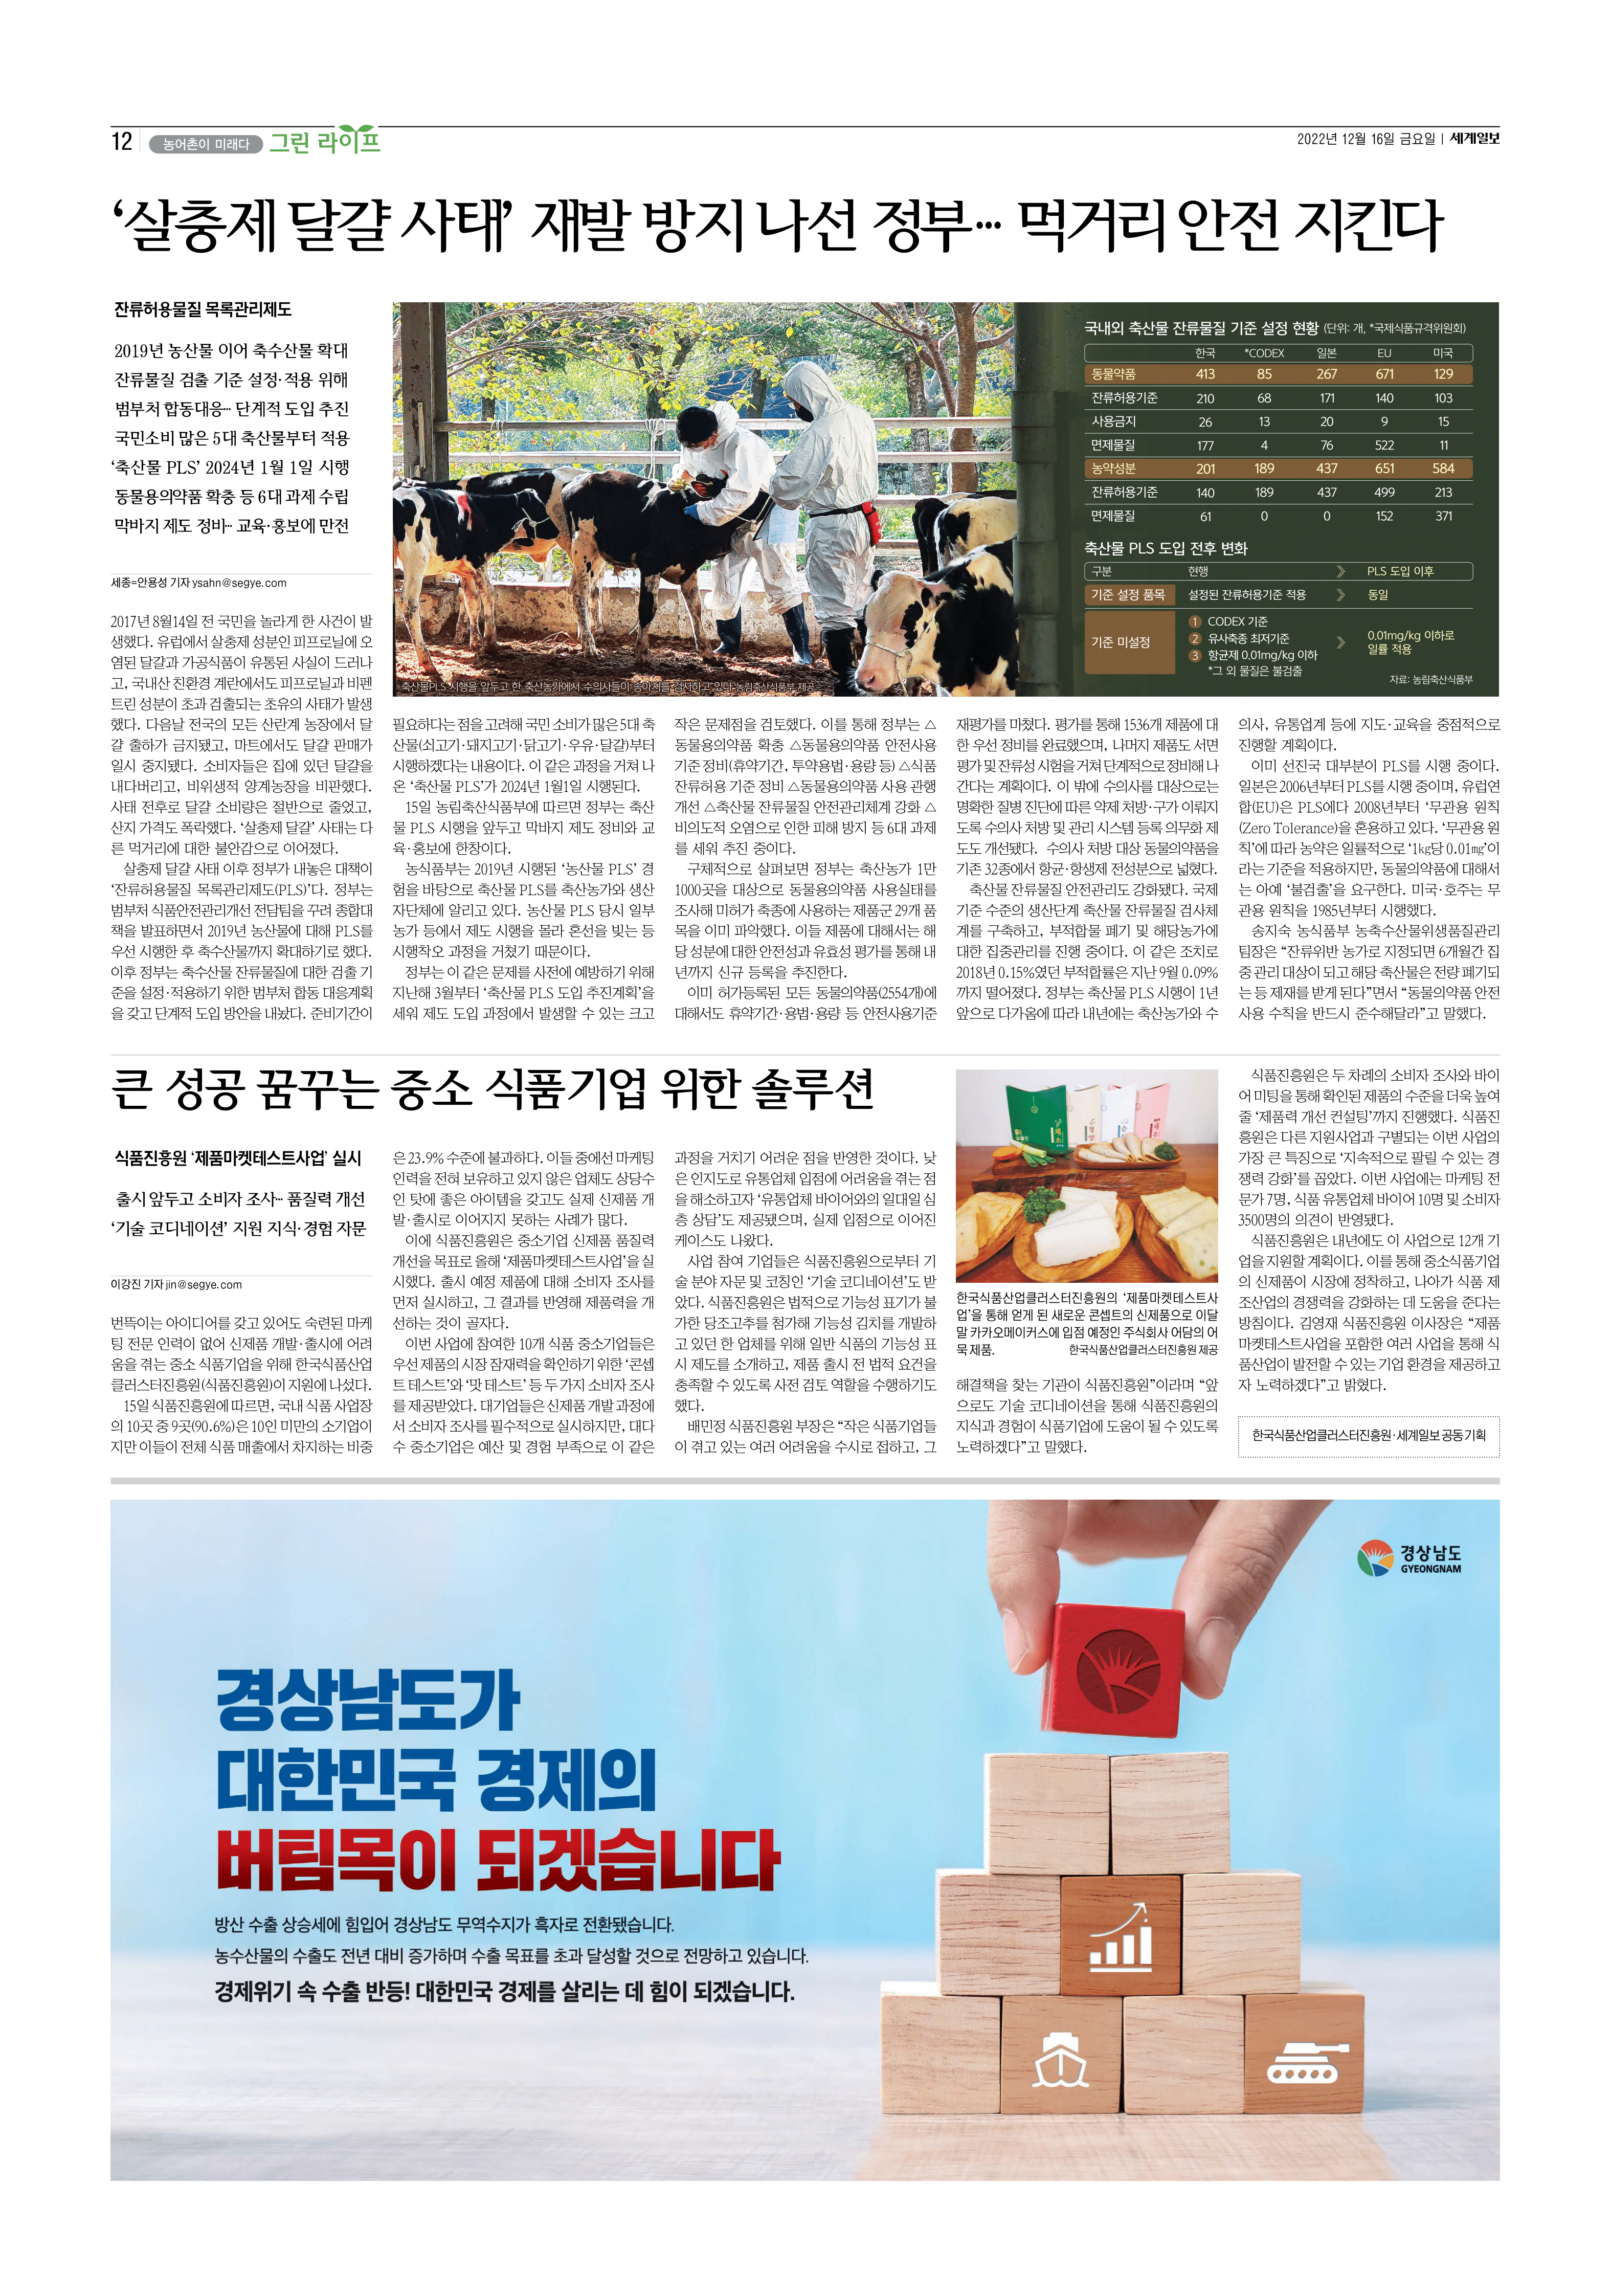 (12.16) 큰 성공 꿈꾸는 중소 식품기업 위한 솔루션(세계일보)_1